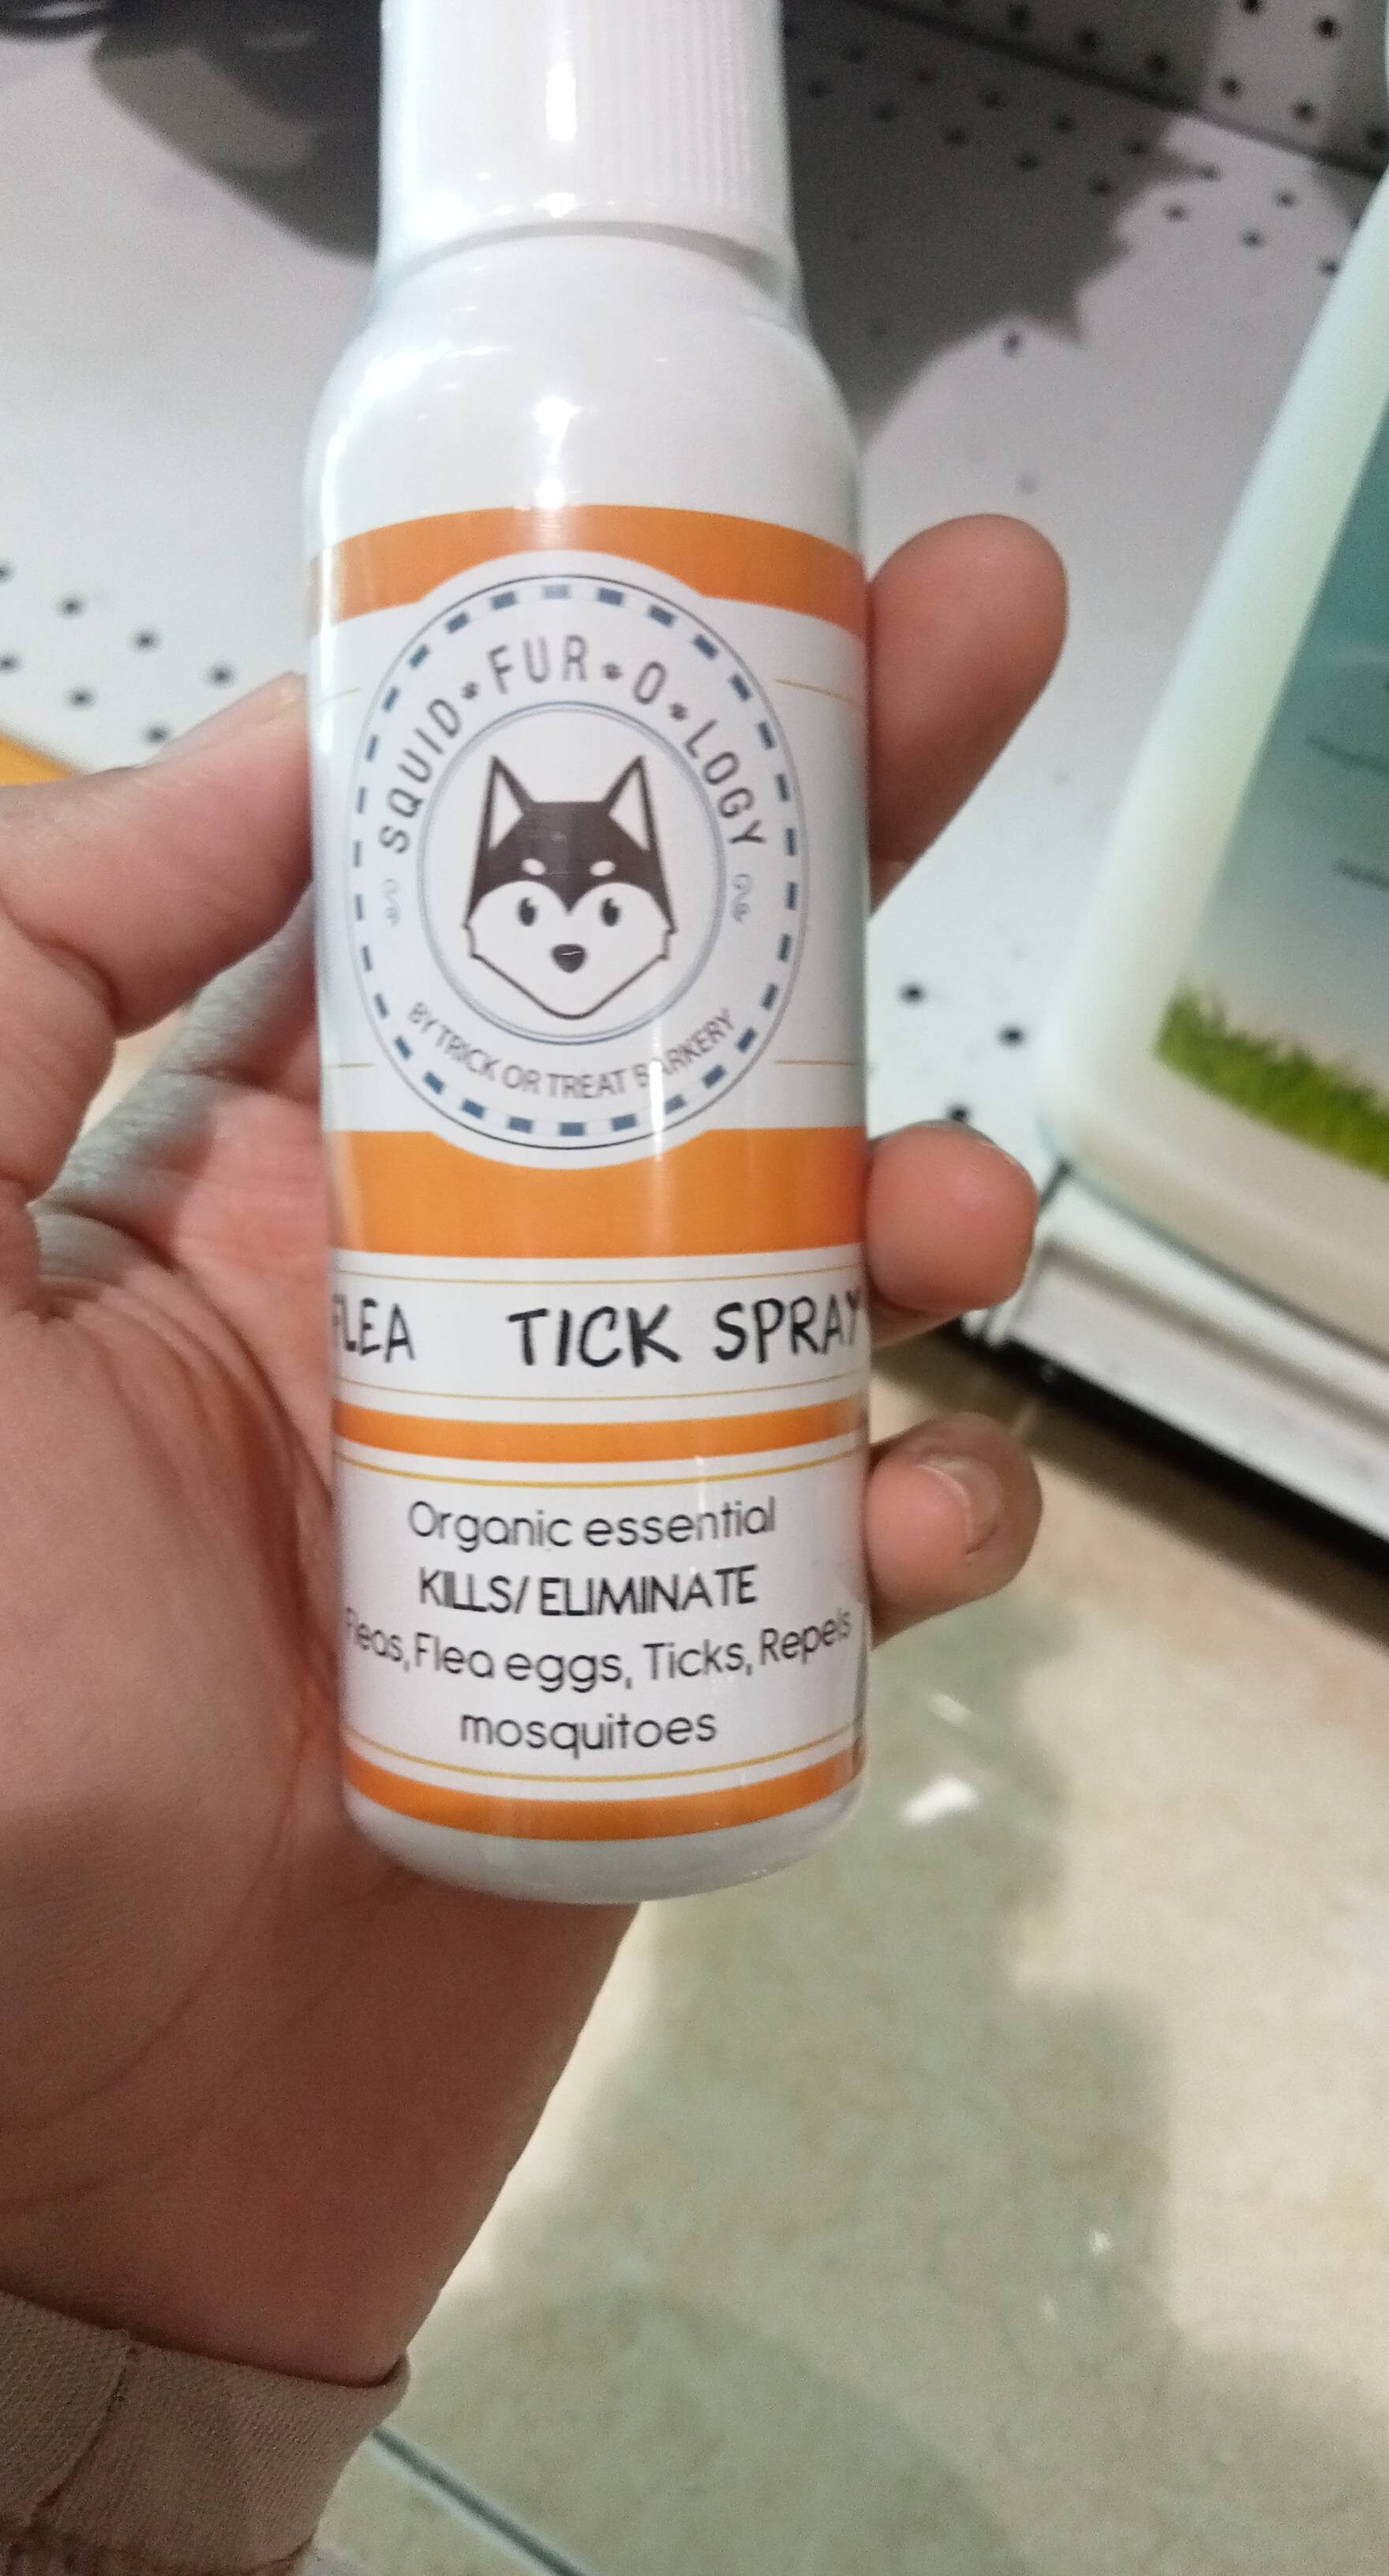 Flea tick spray - Product - en